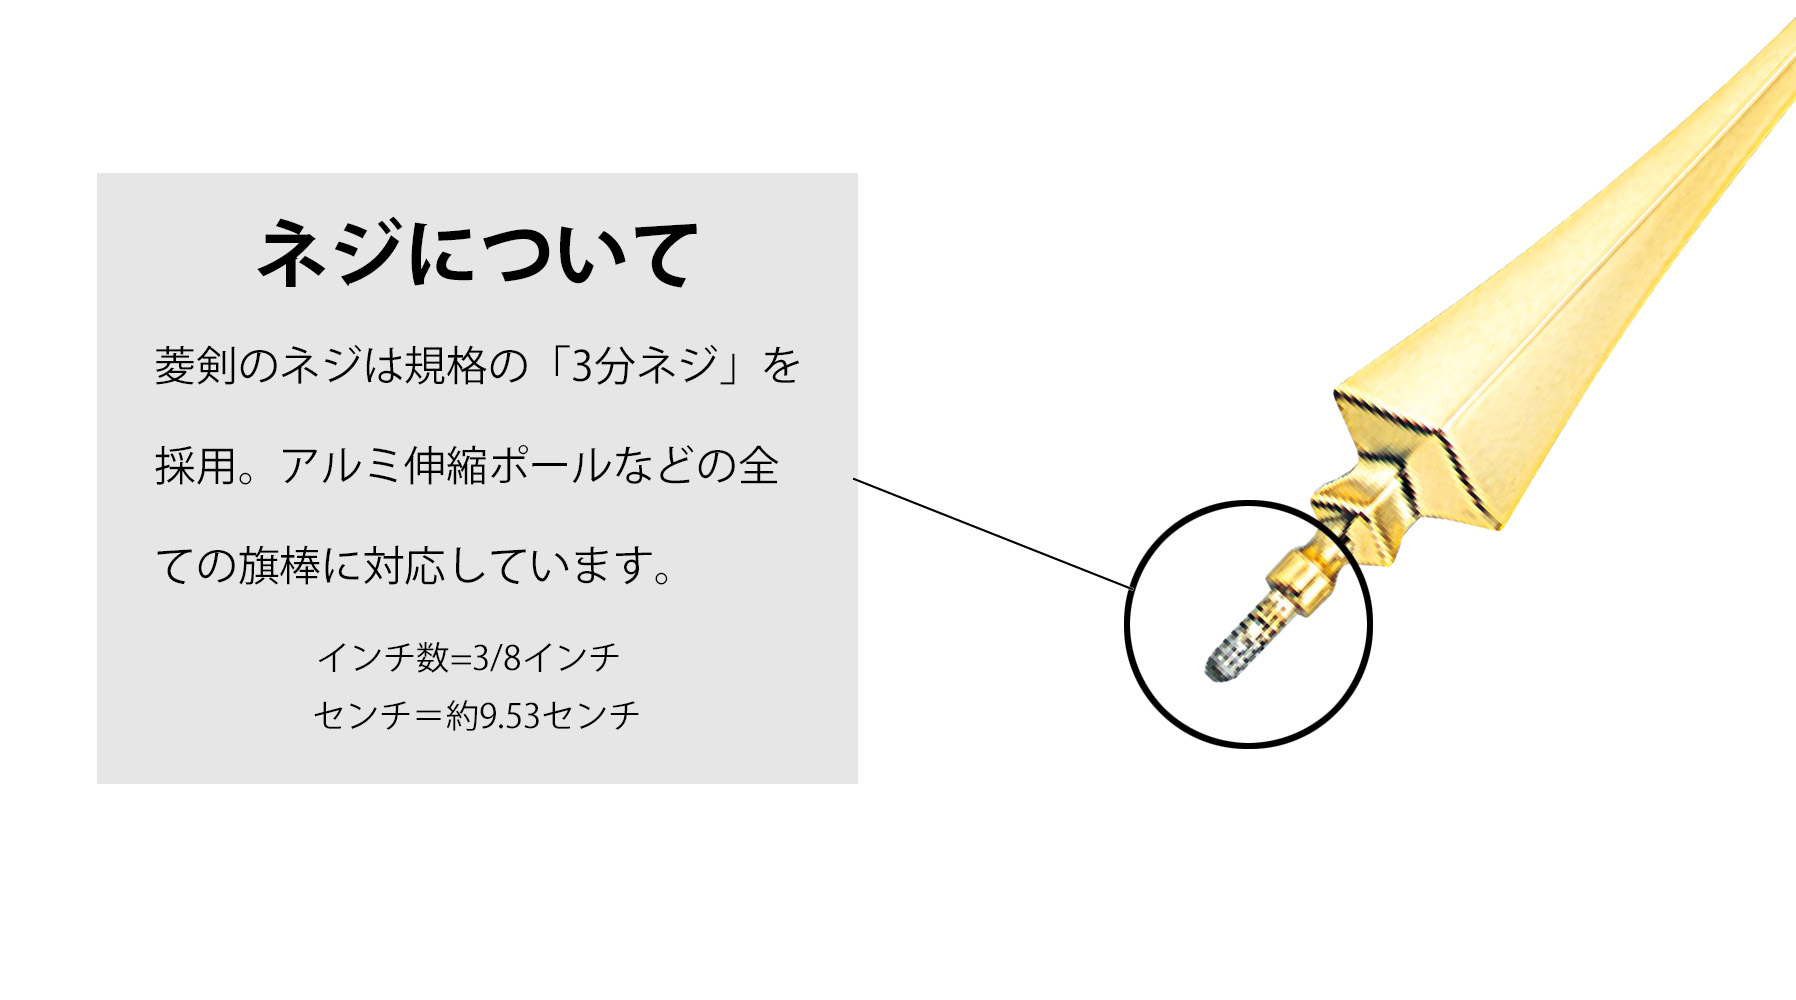 菱型剣（金/アルミダイキャスト製）のネジサイズ